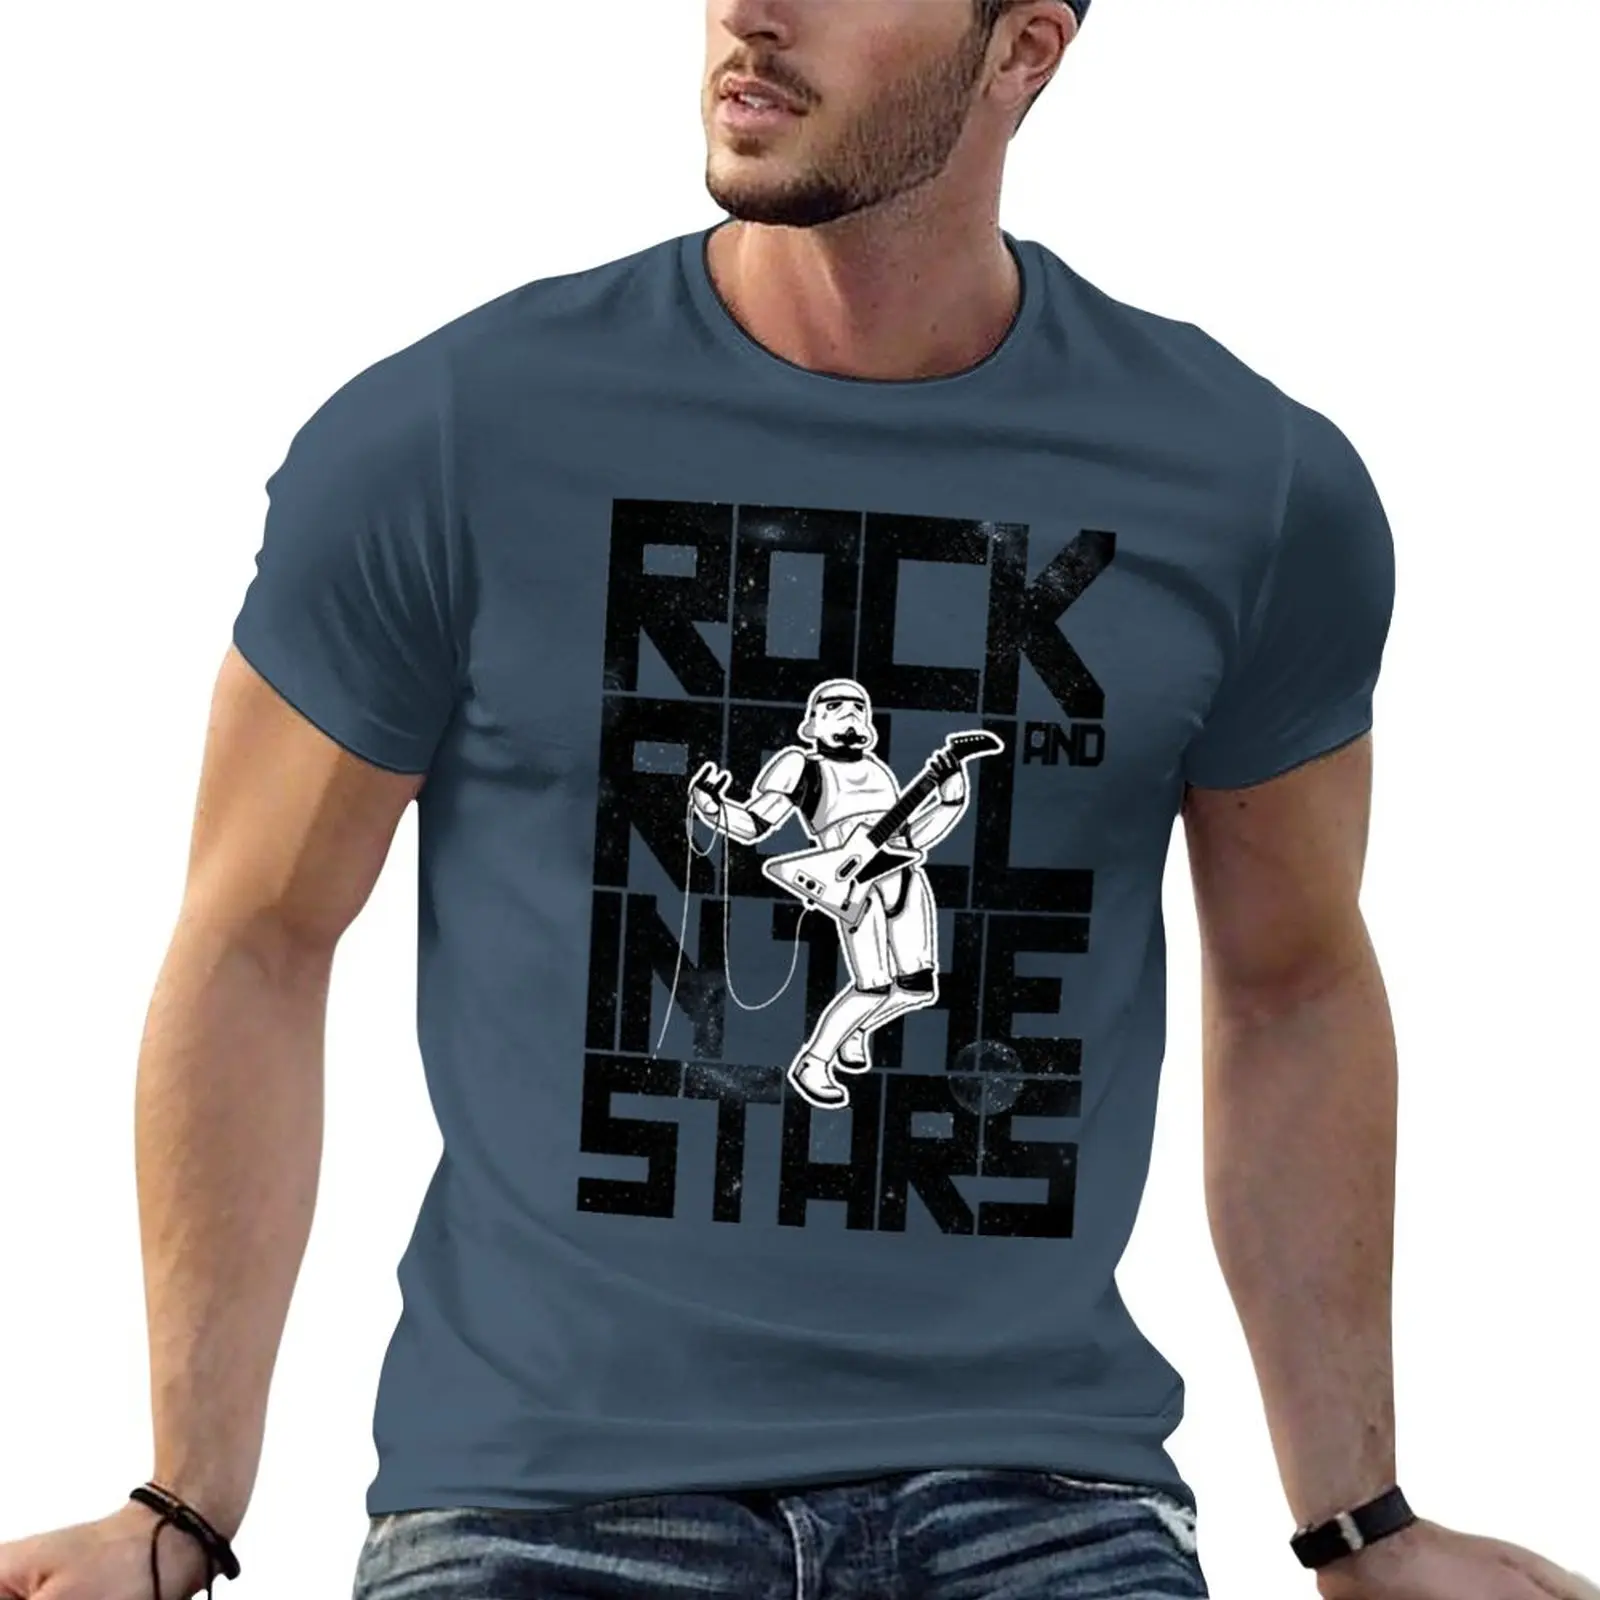 

Print Rock in the Stars T-Shirt blank t shirts Anime t-shirt Tee shirt mens clothing